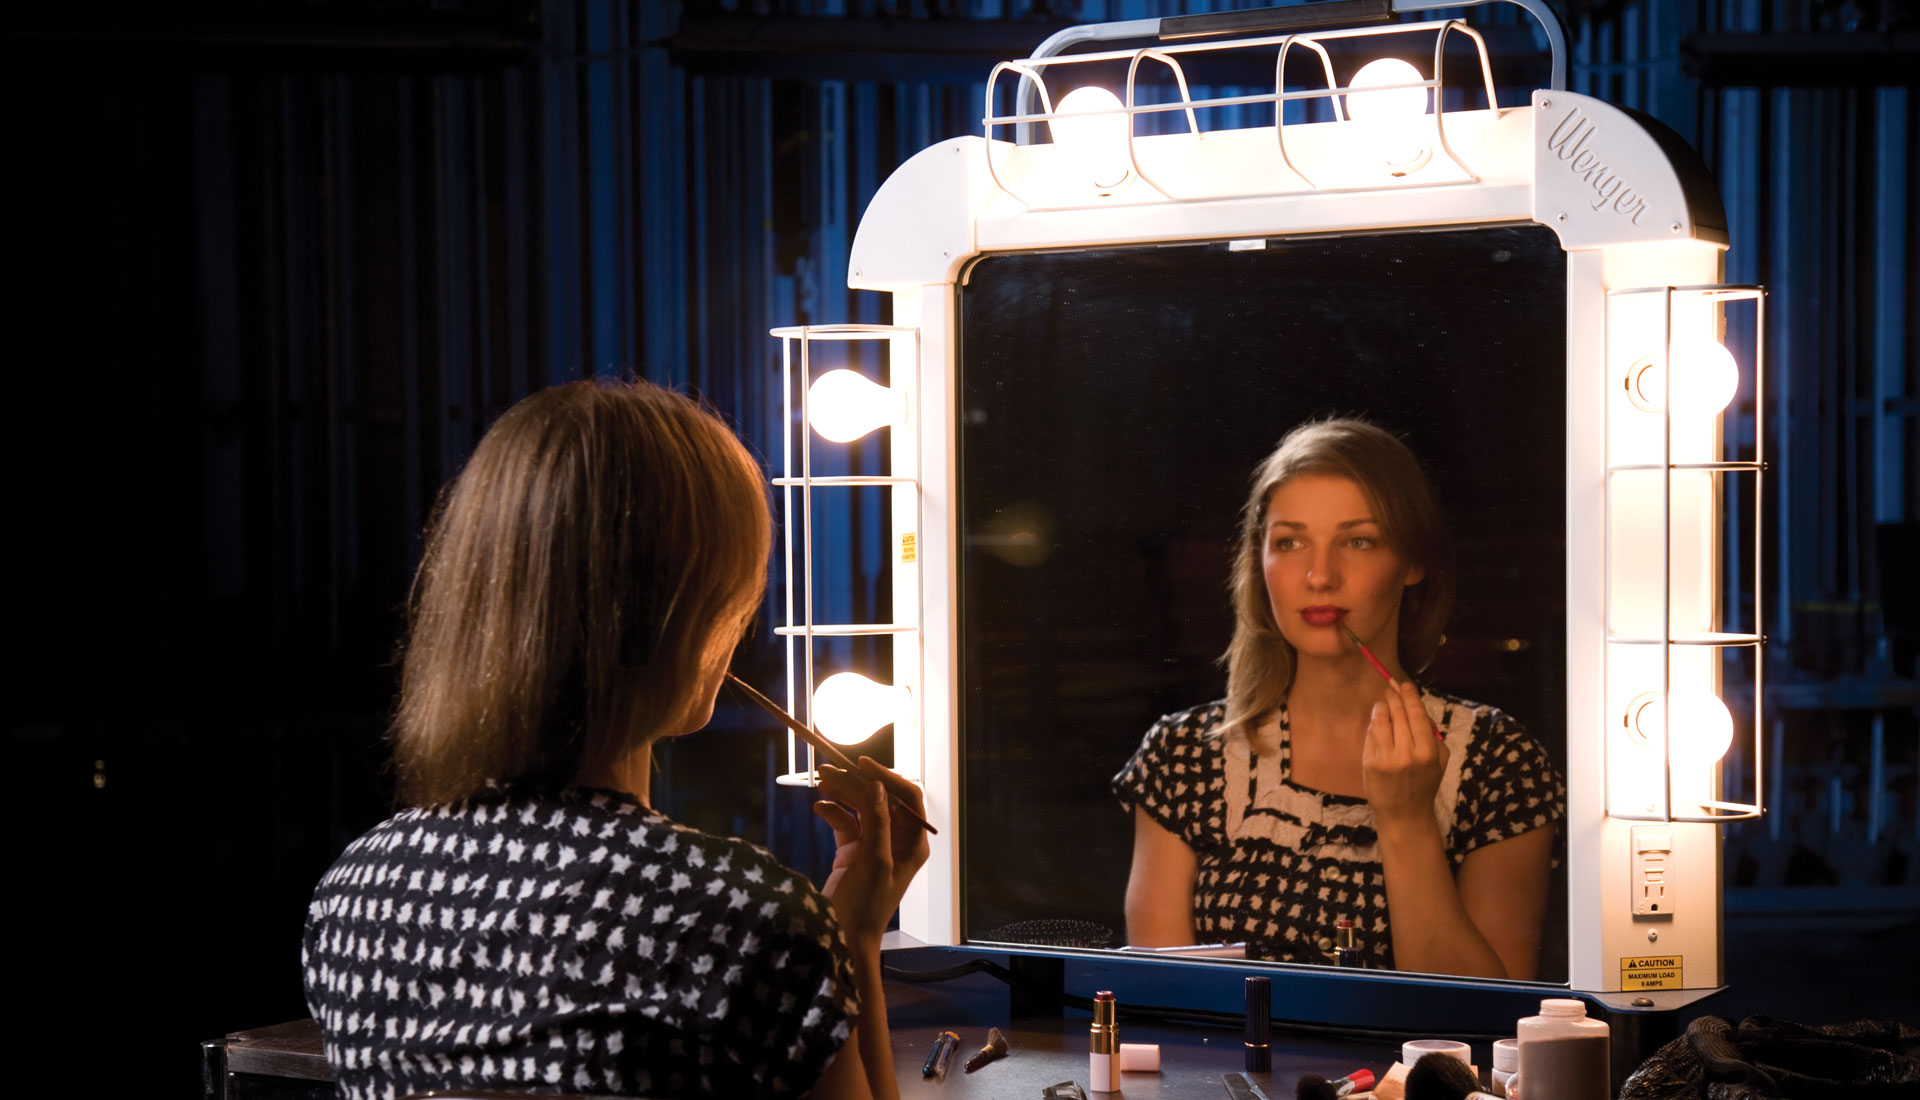 MAKE UP FOR EVER: Backstage Makeup Station